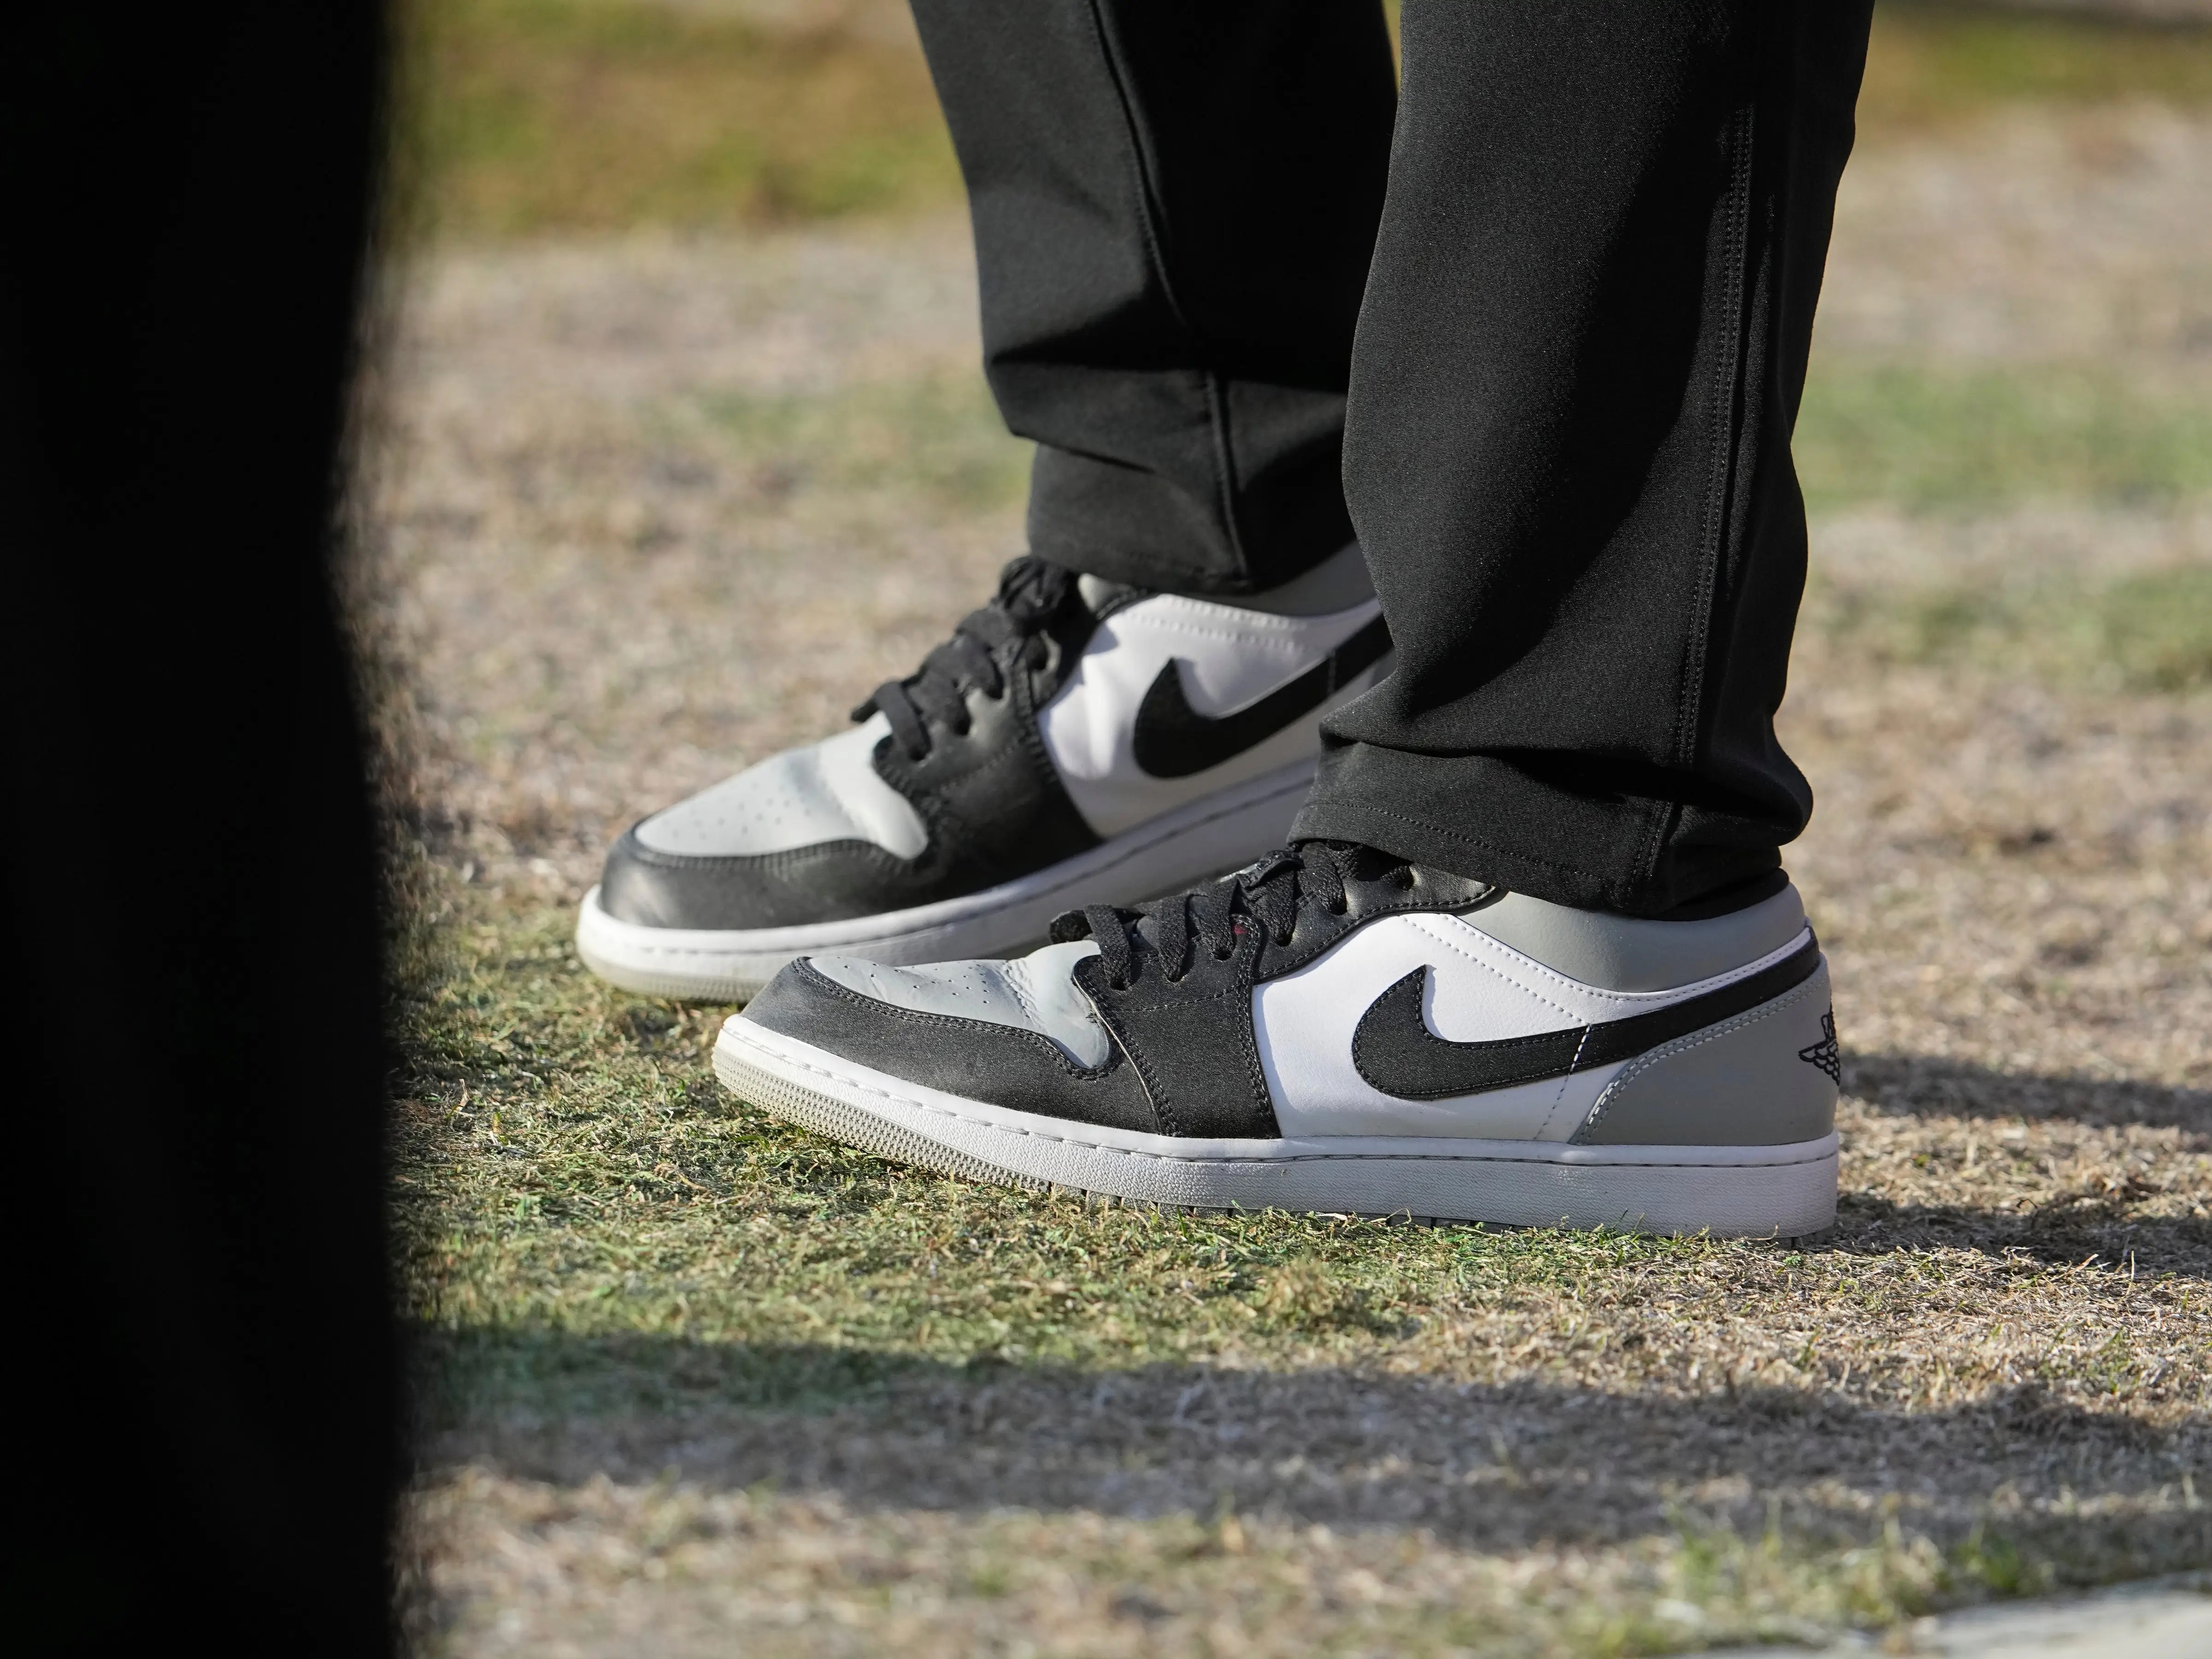 Nike se a 3 obstáculos que podrían amenazar su reinado | Business Insider